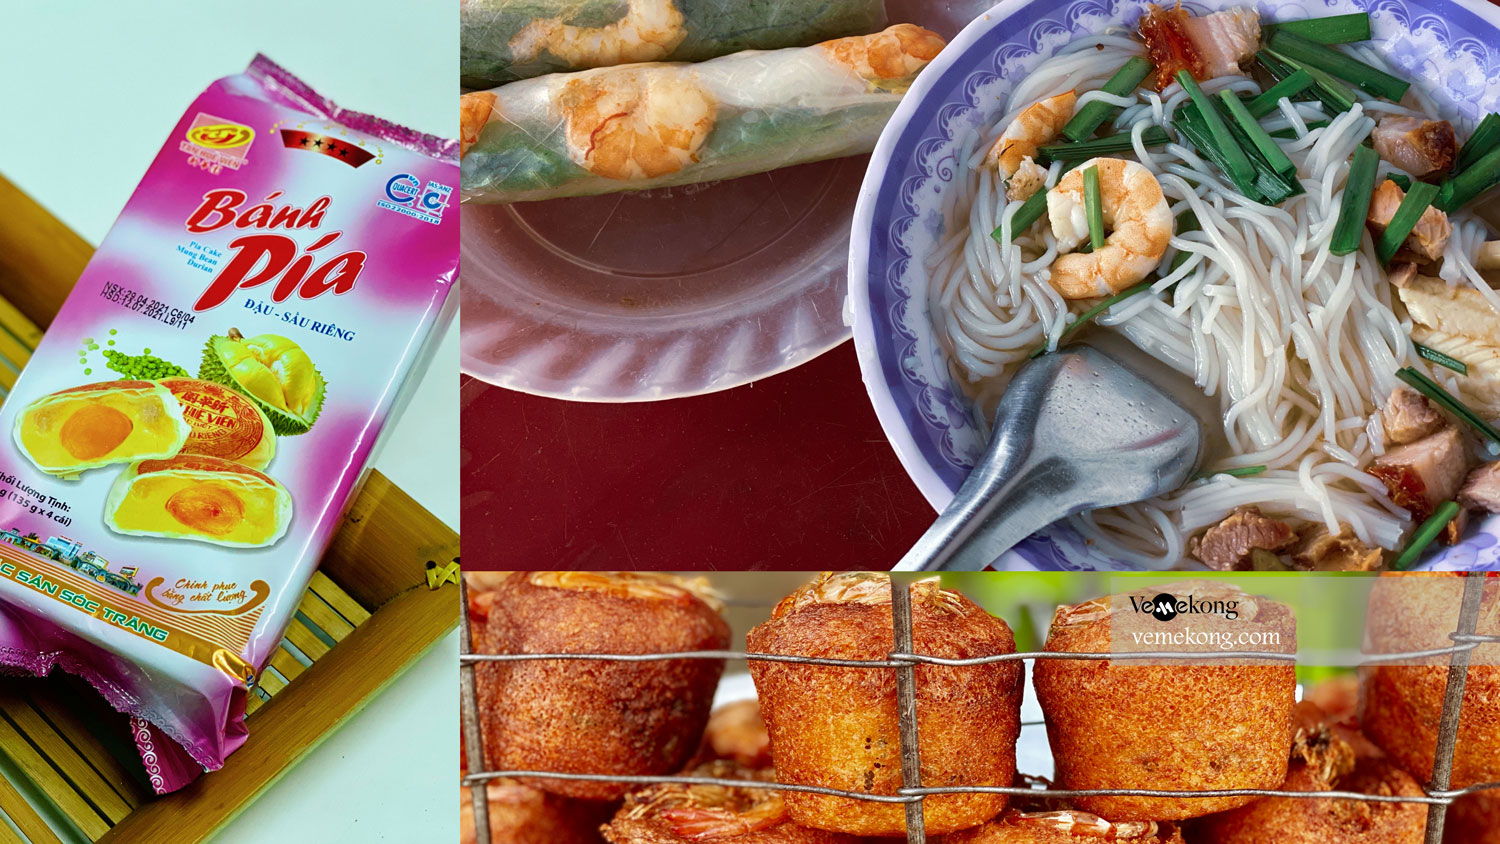 Soc Trang Food & Drink Guide - Top things to try in Soc Trang